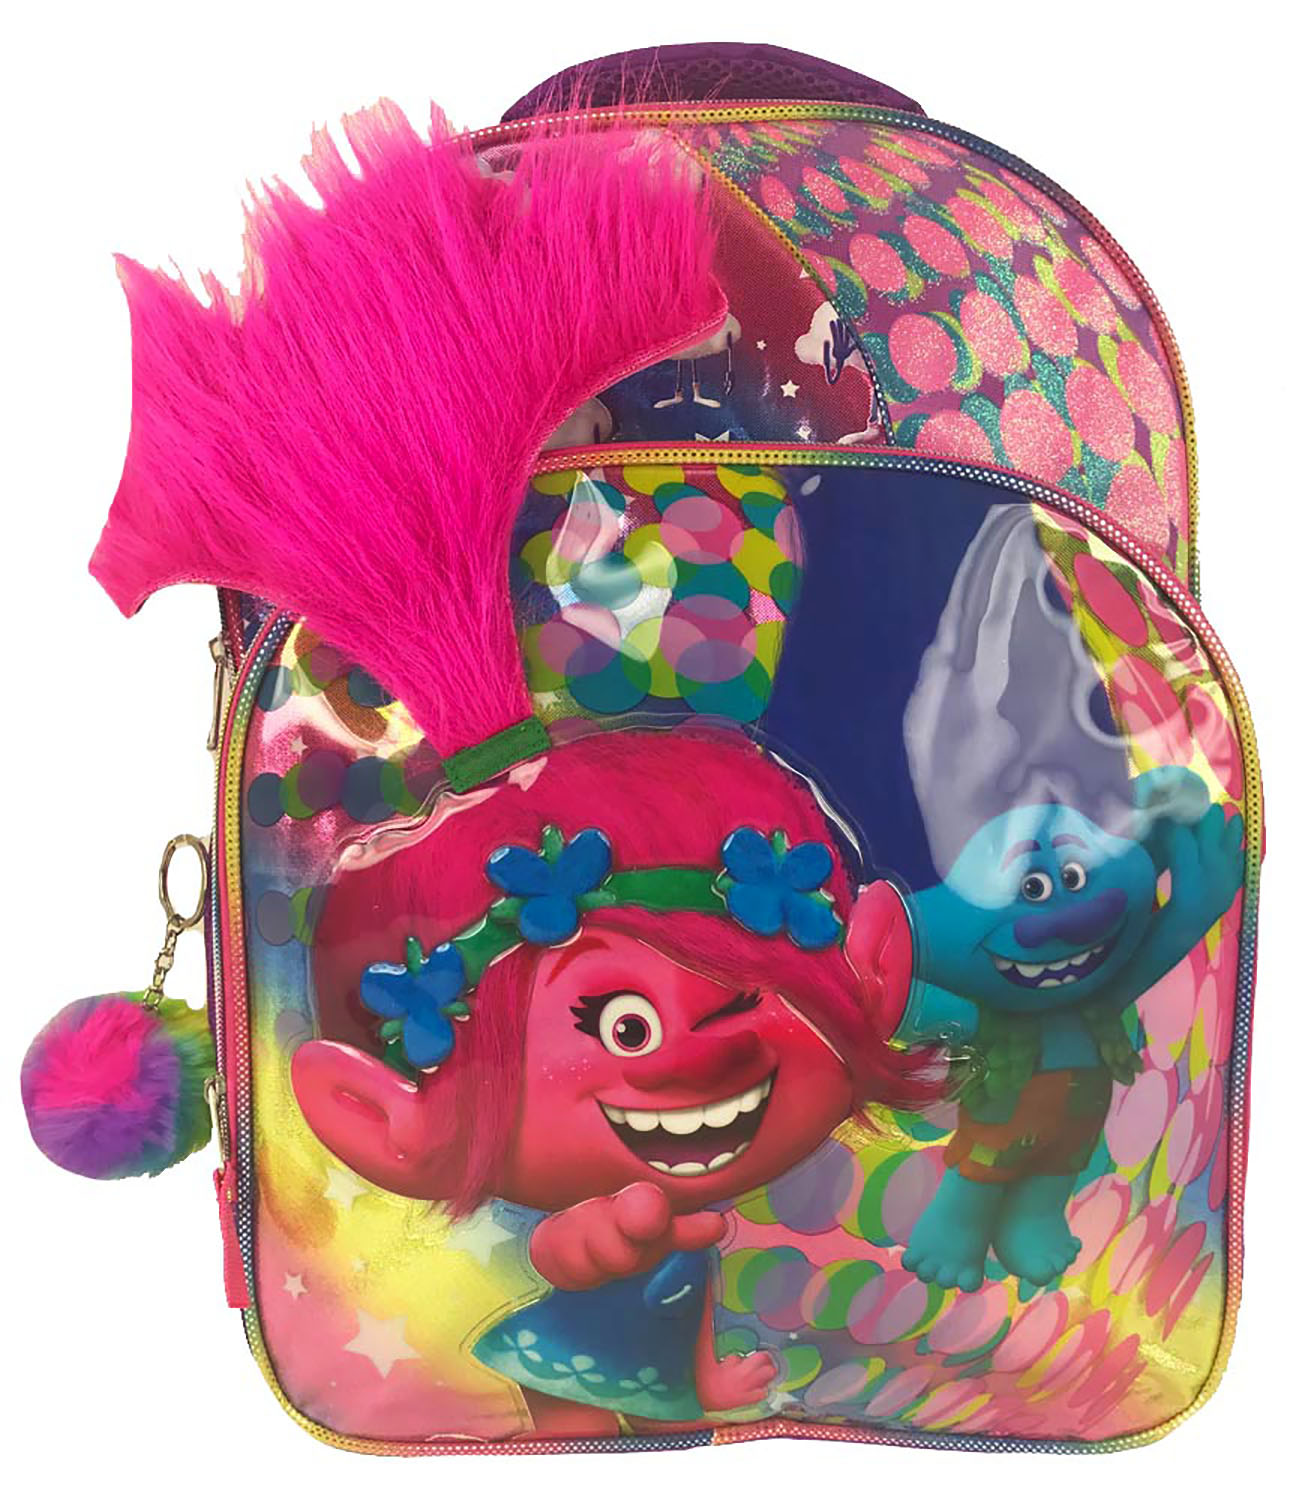 Universal Studios Trolls Backpack with pom pom keychain